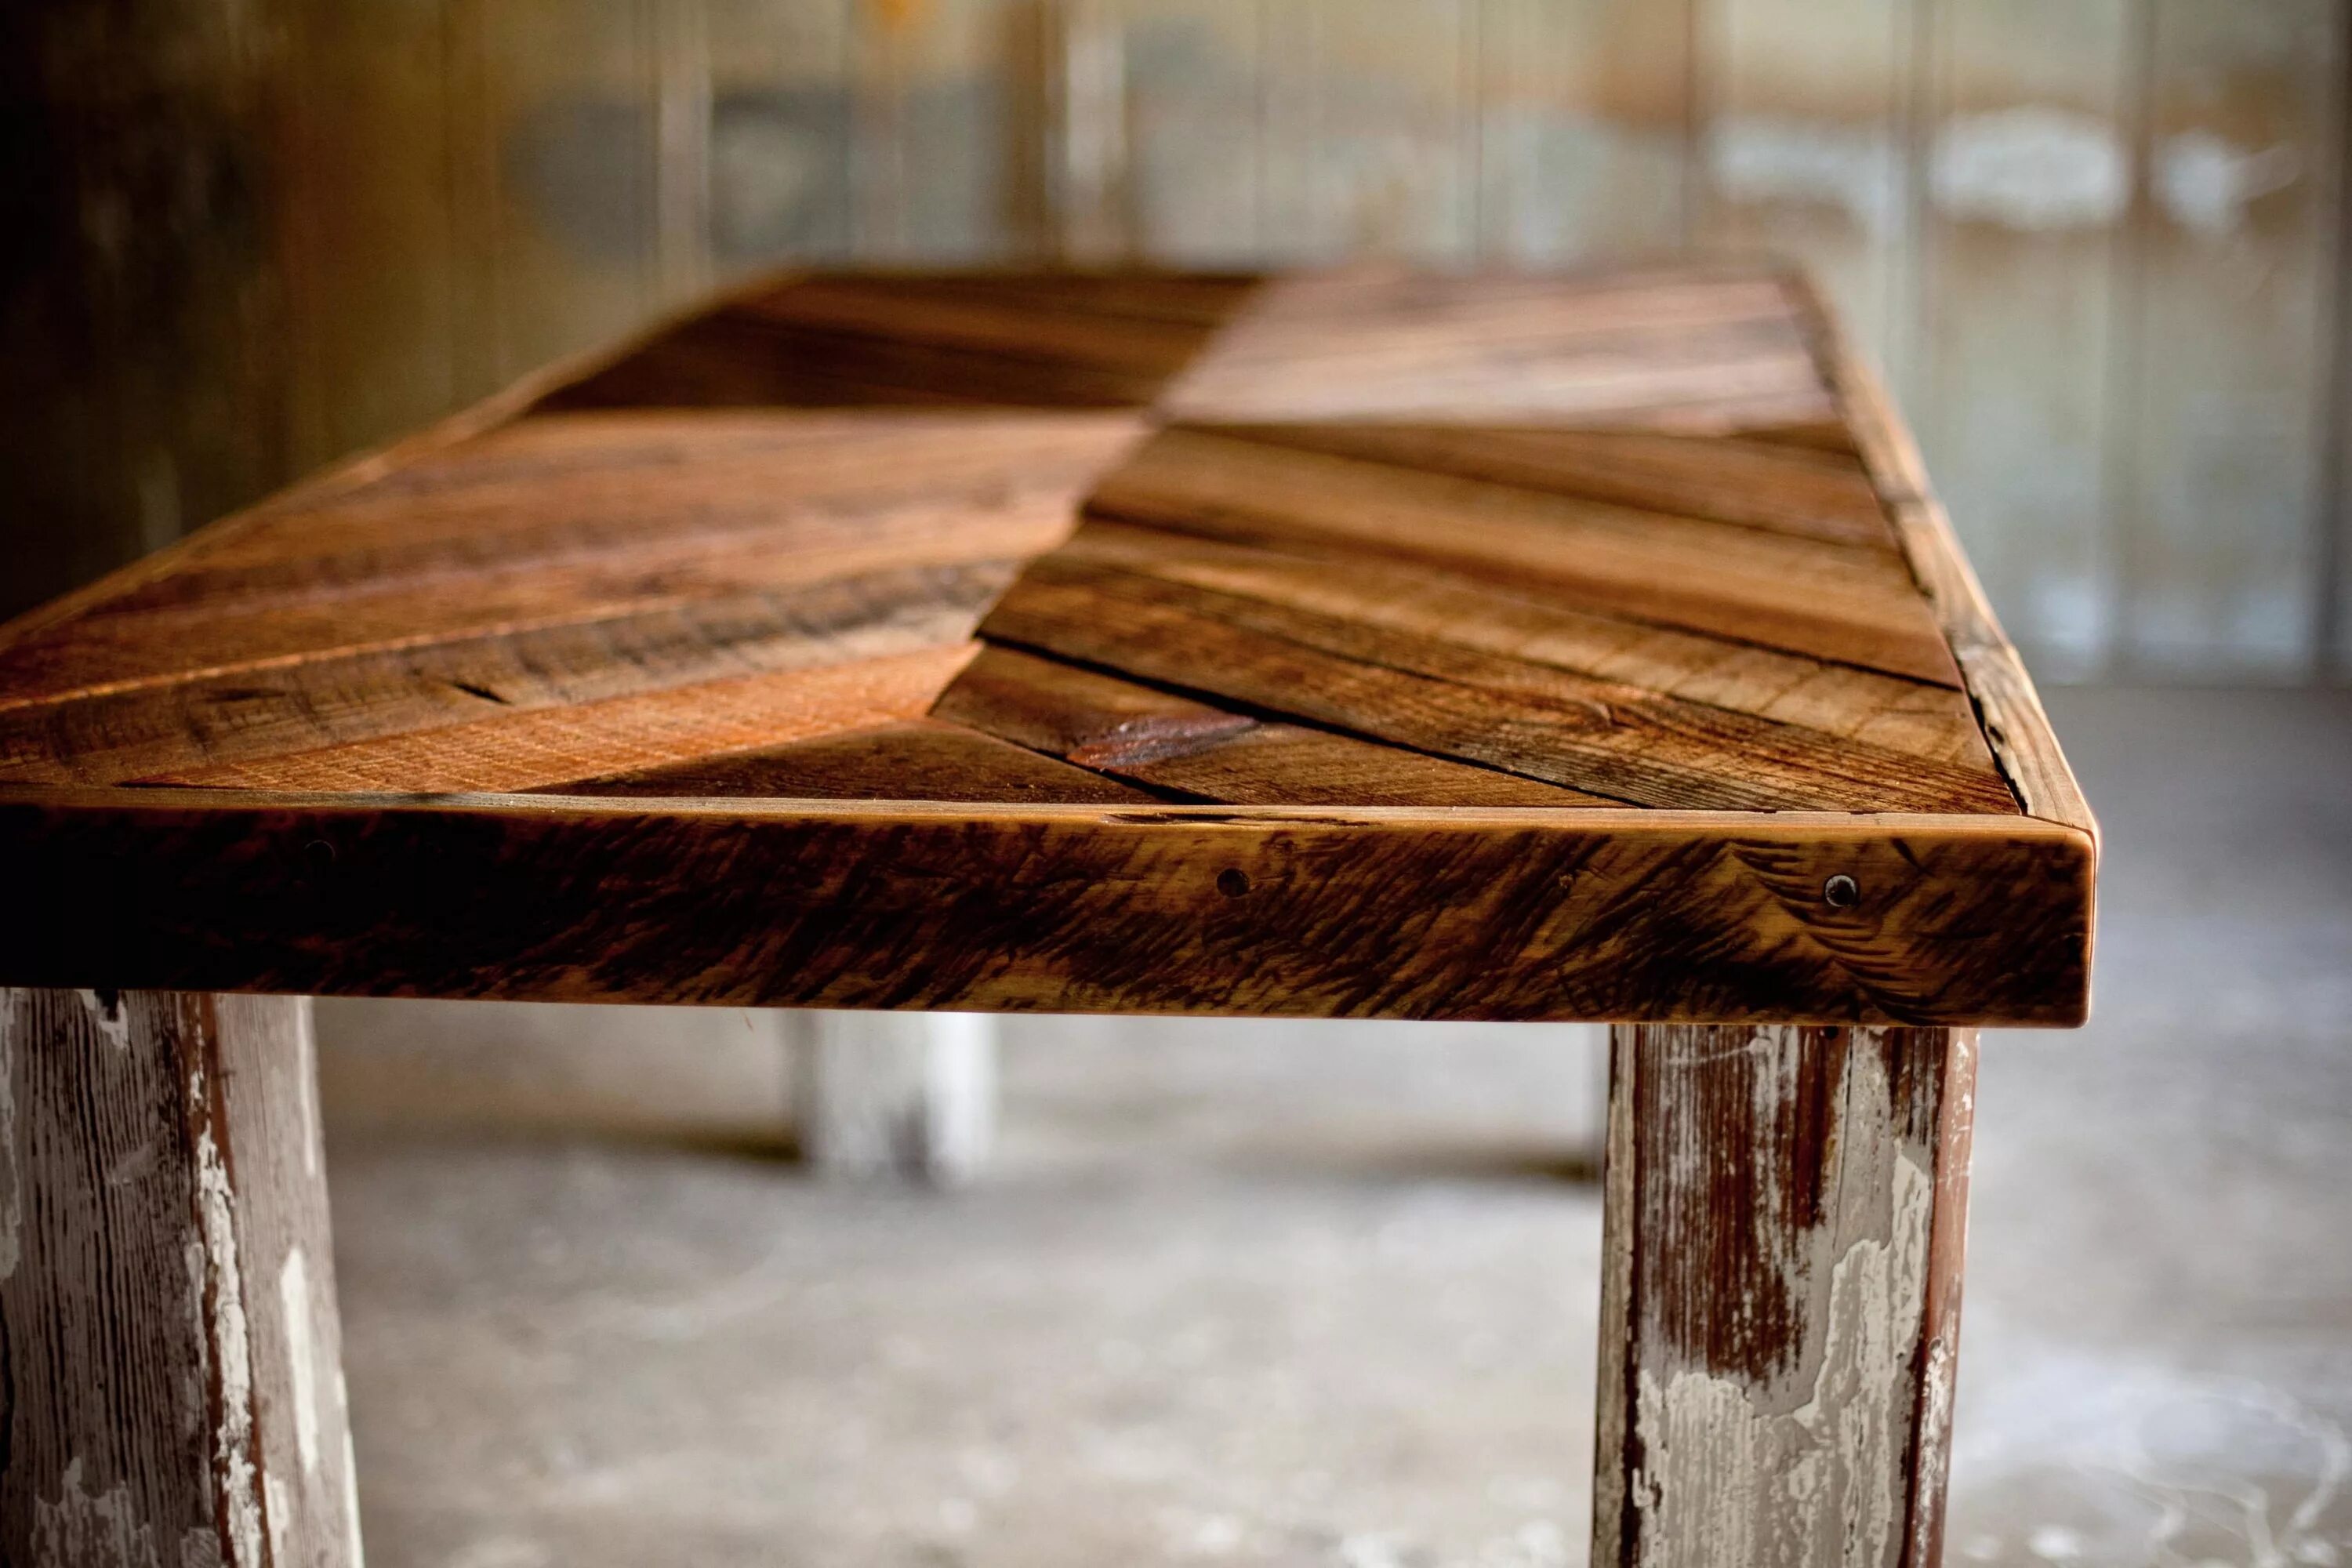 Лучшие картинки стола. Стол деревянный. Деревянная поверхность стола. Деревянный лакированный стол. Старая деревянная столешница.